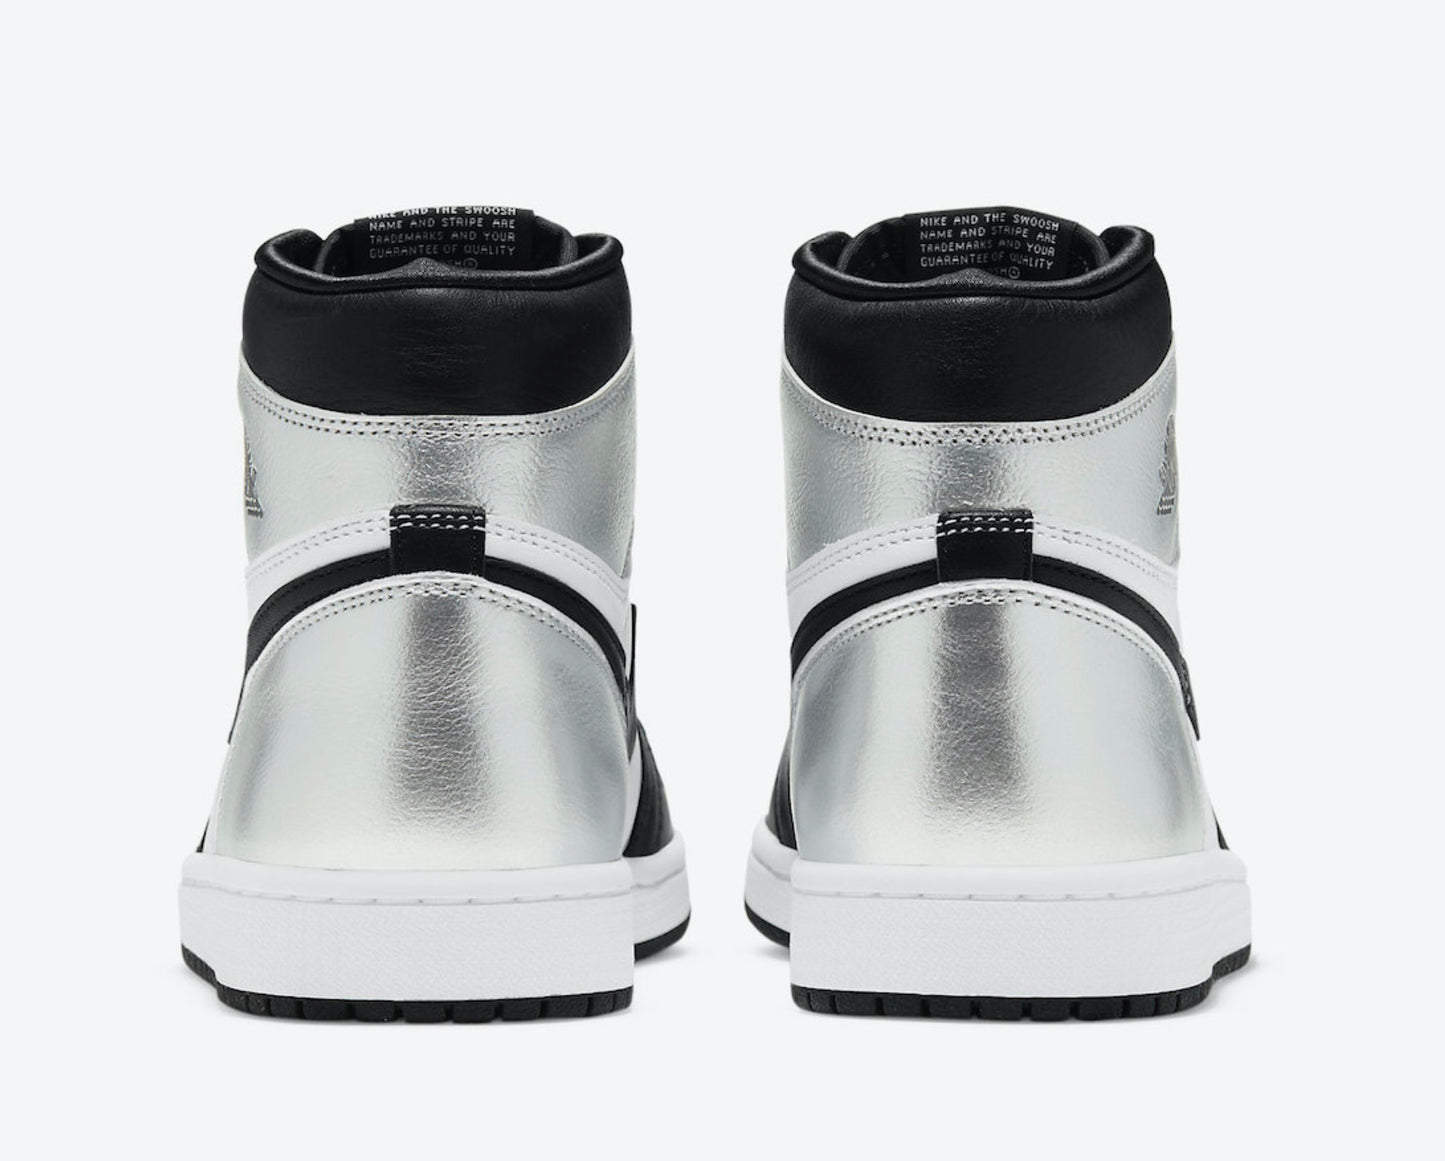 2021 Women's Nike Air Jordan 1 High OG “Silver Toe”